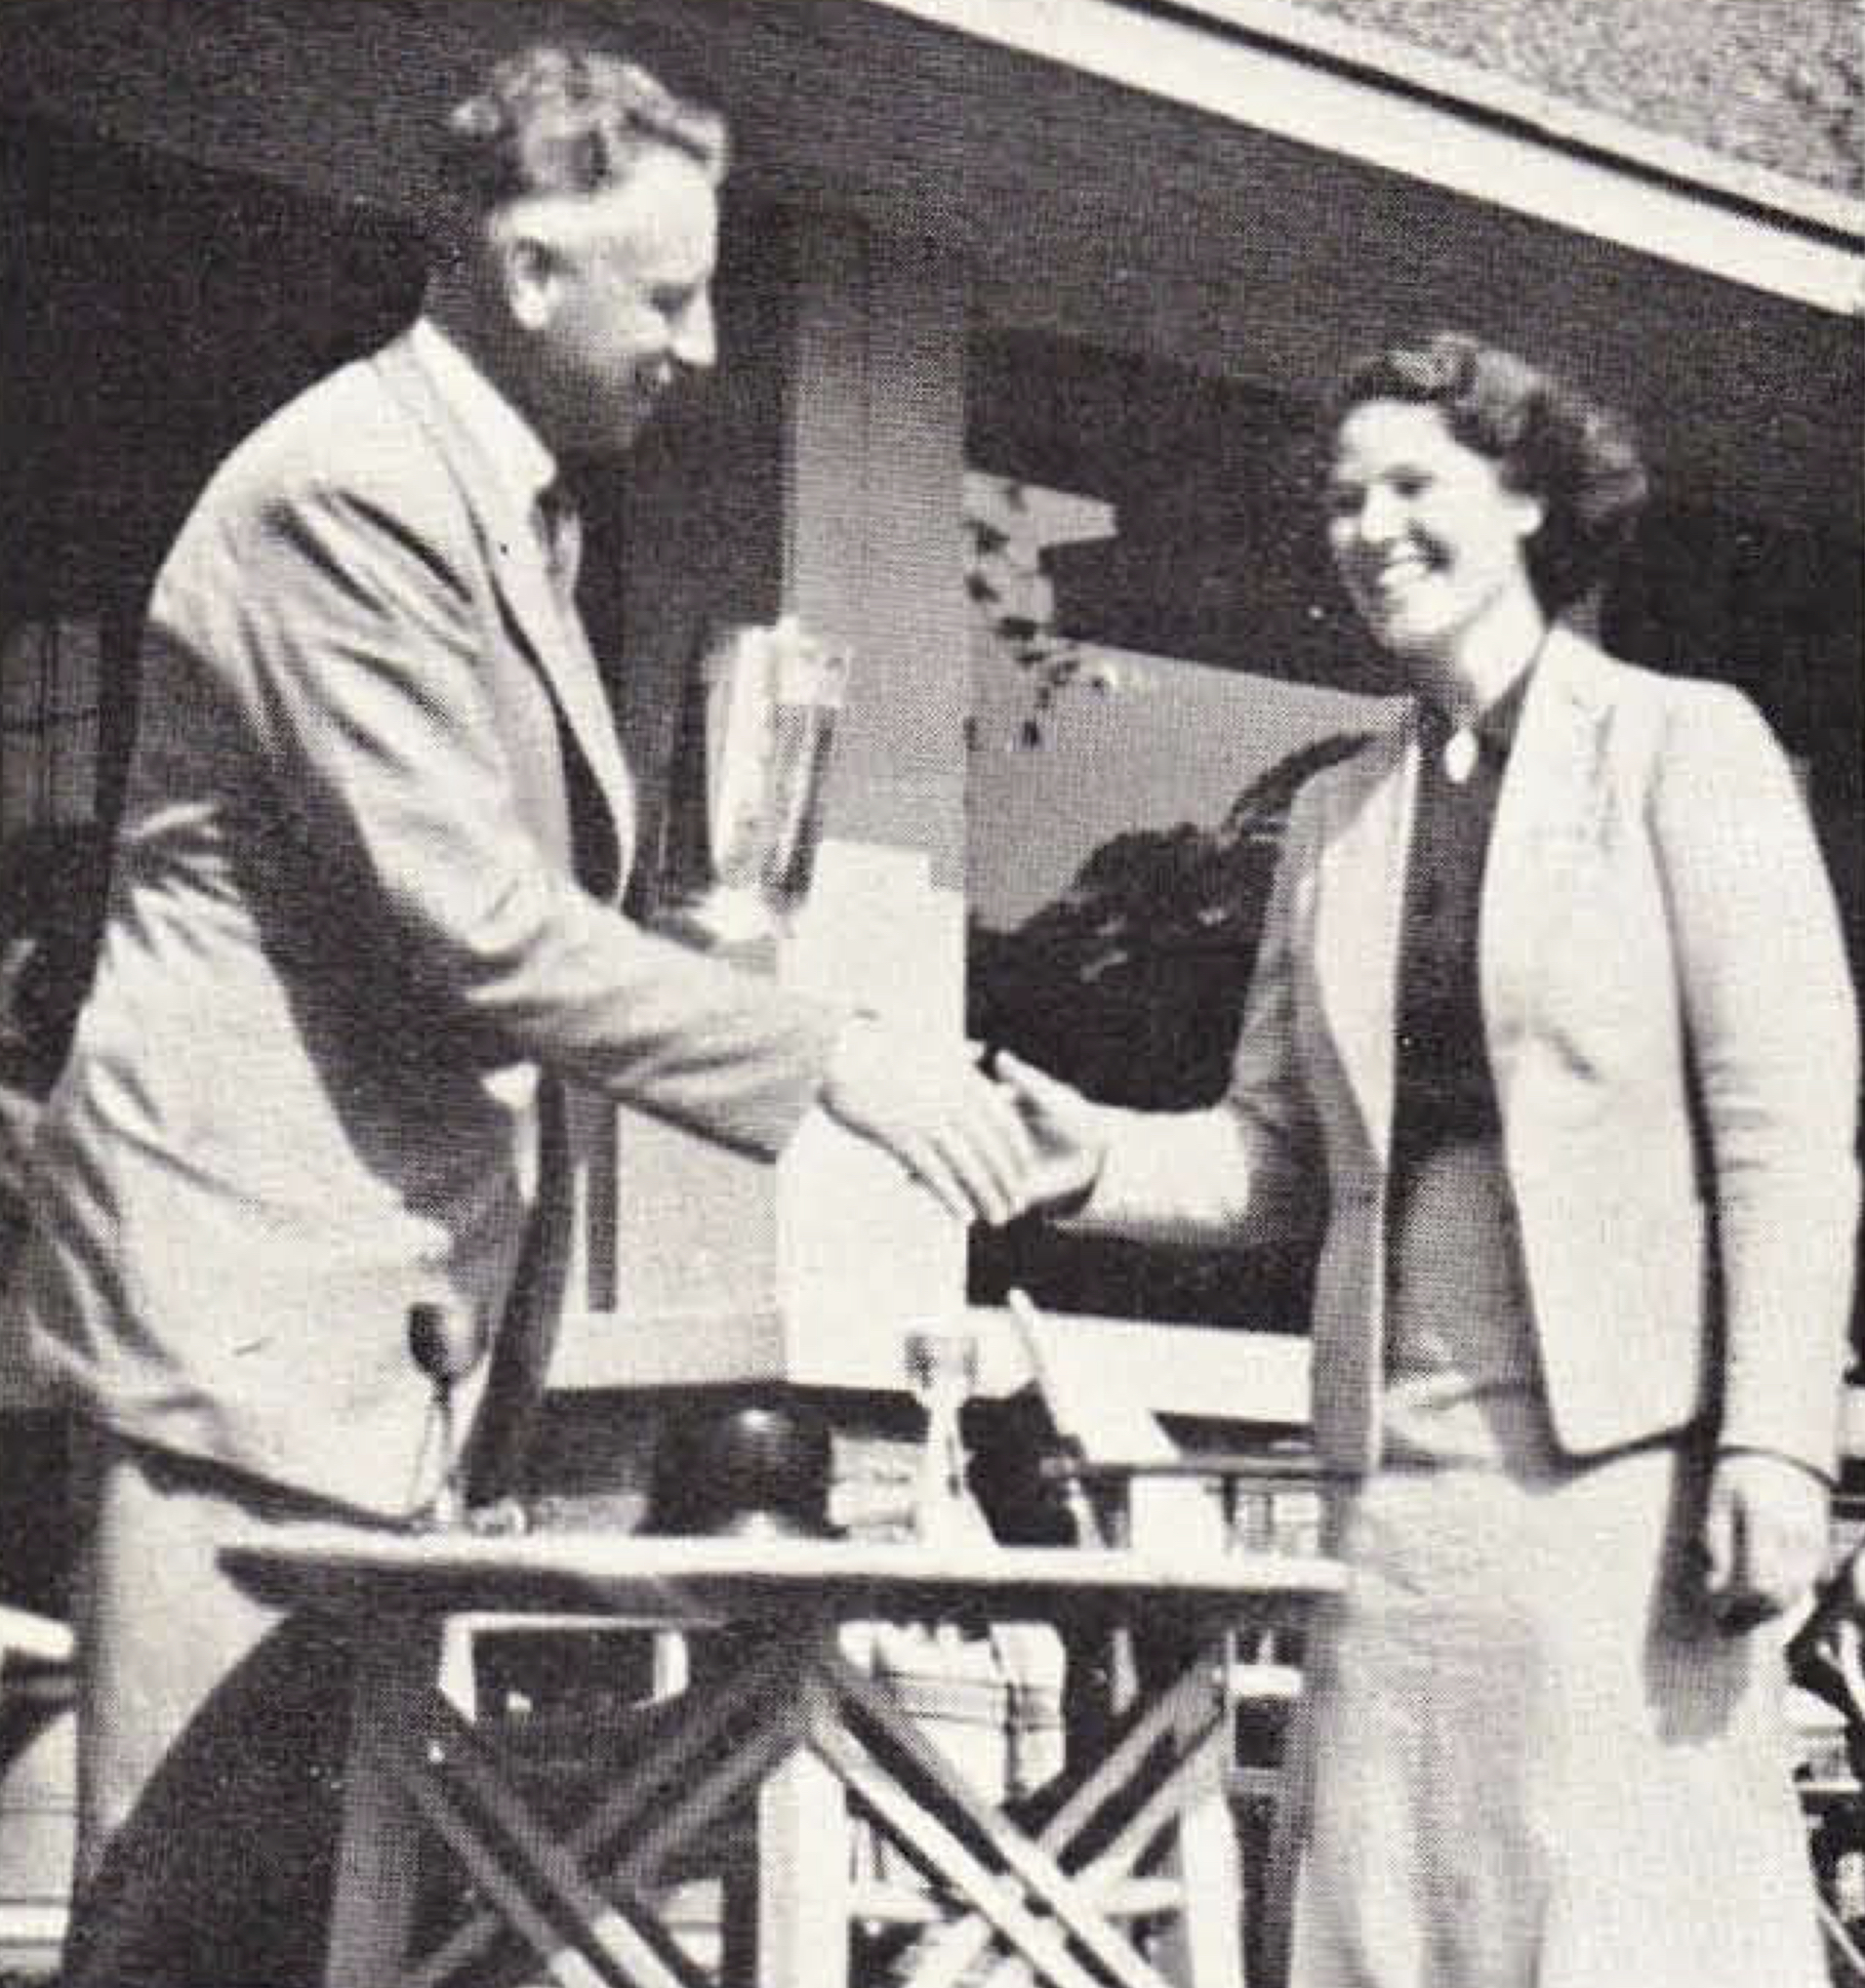 1938 JR Koning reikt names de Amsterdamsche wisselbeker voor dameskampioenschap van 1938 uit aan Sheila Stroyan Maandblad Golf 1938 2-5